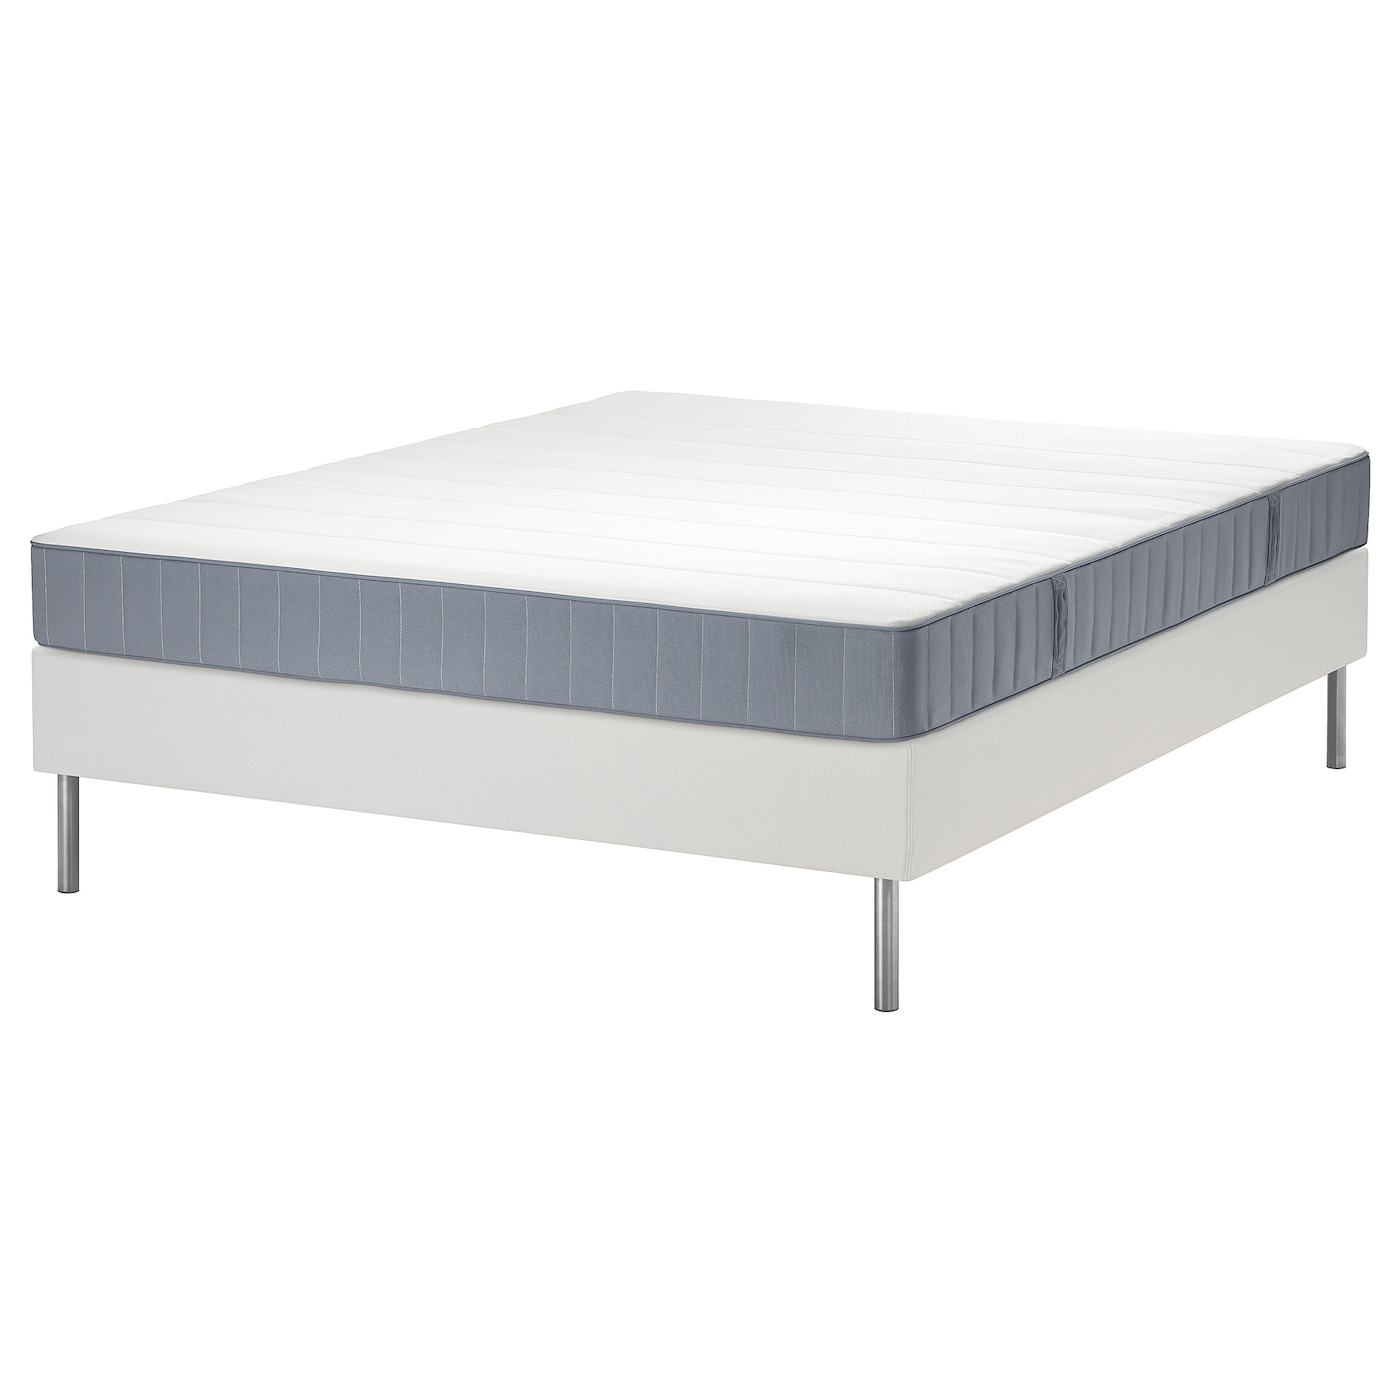 Кровать - LYNGÖR / LYNGОR IKEA/ ЛЮНГЕРЬ ИКЕА,  140х200 см, белый